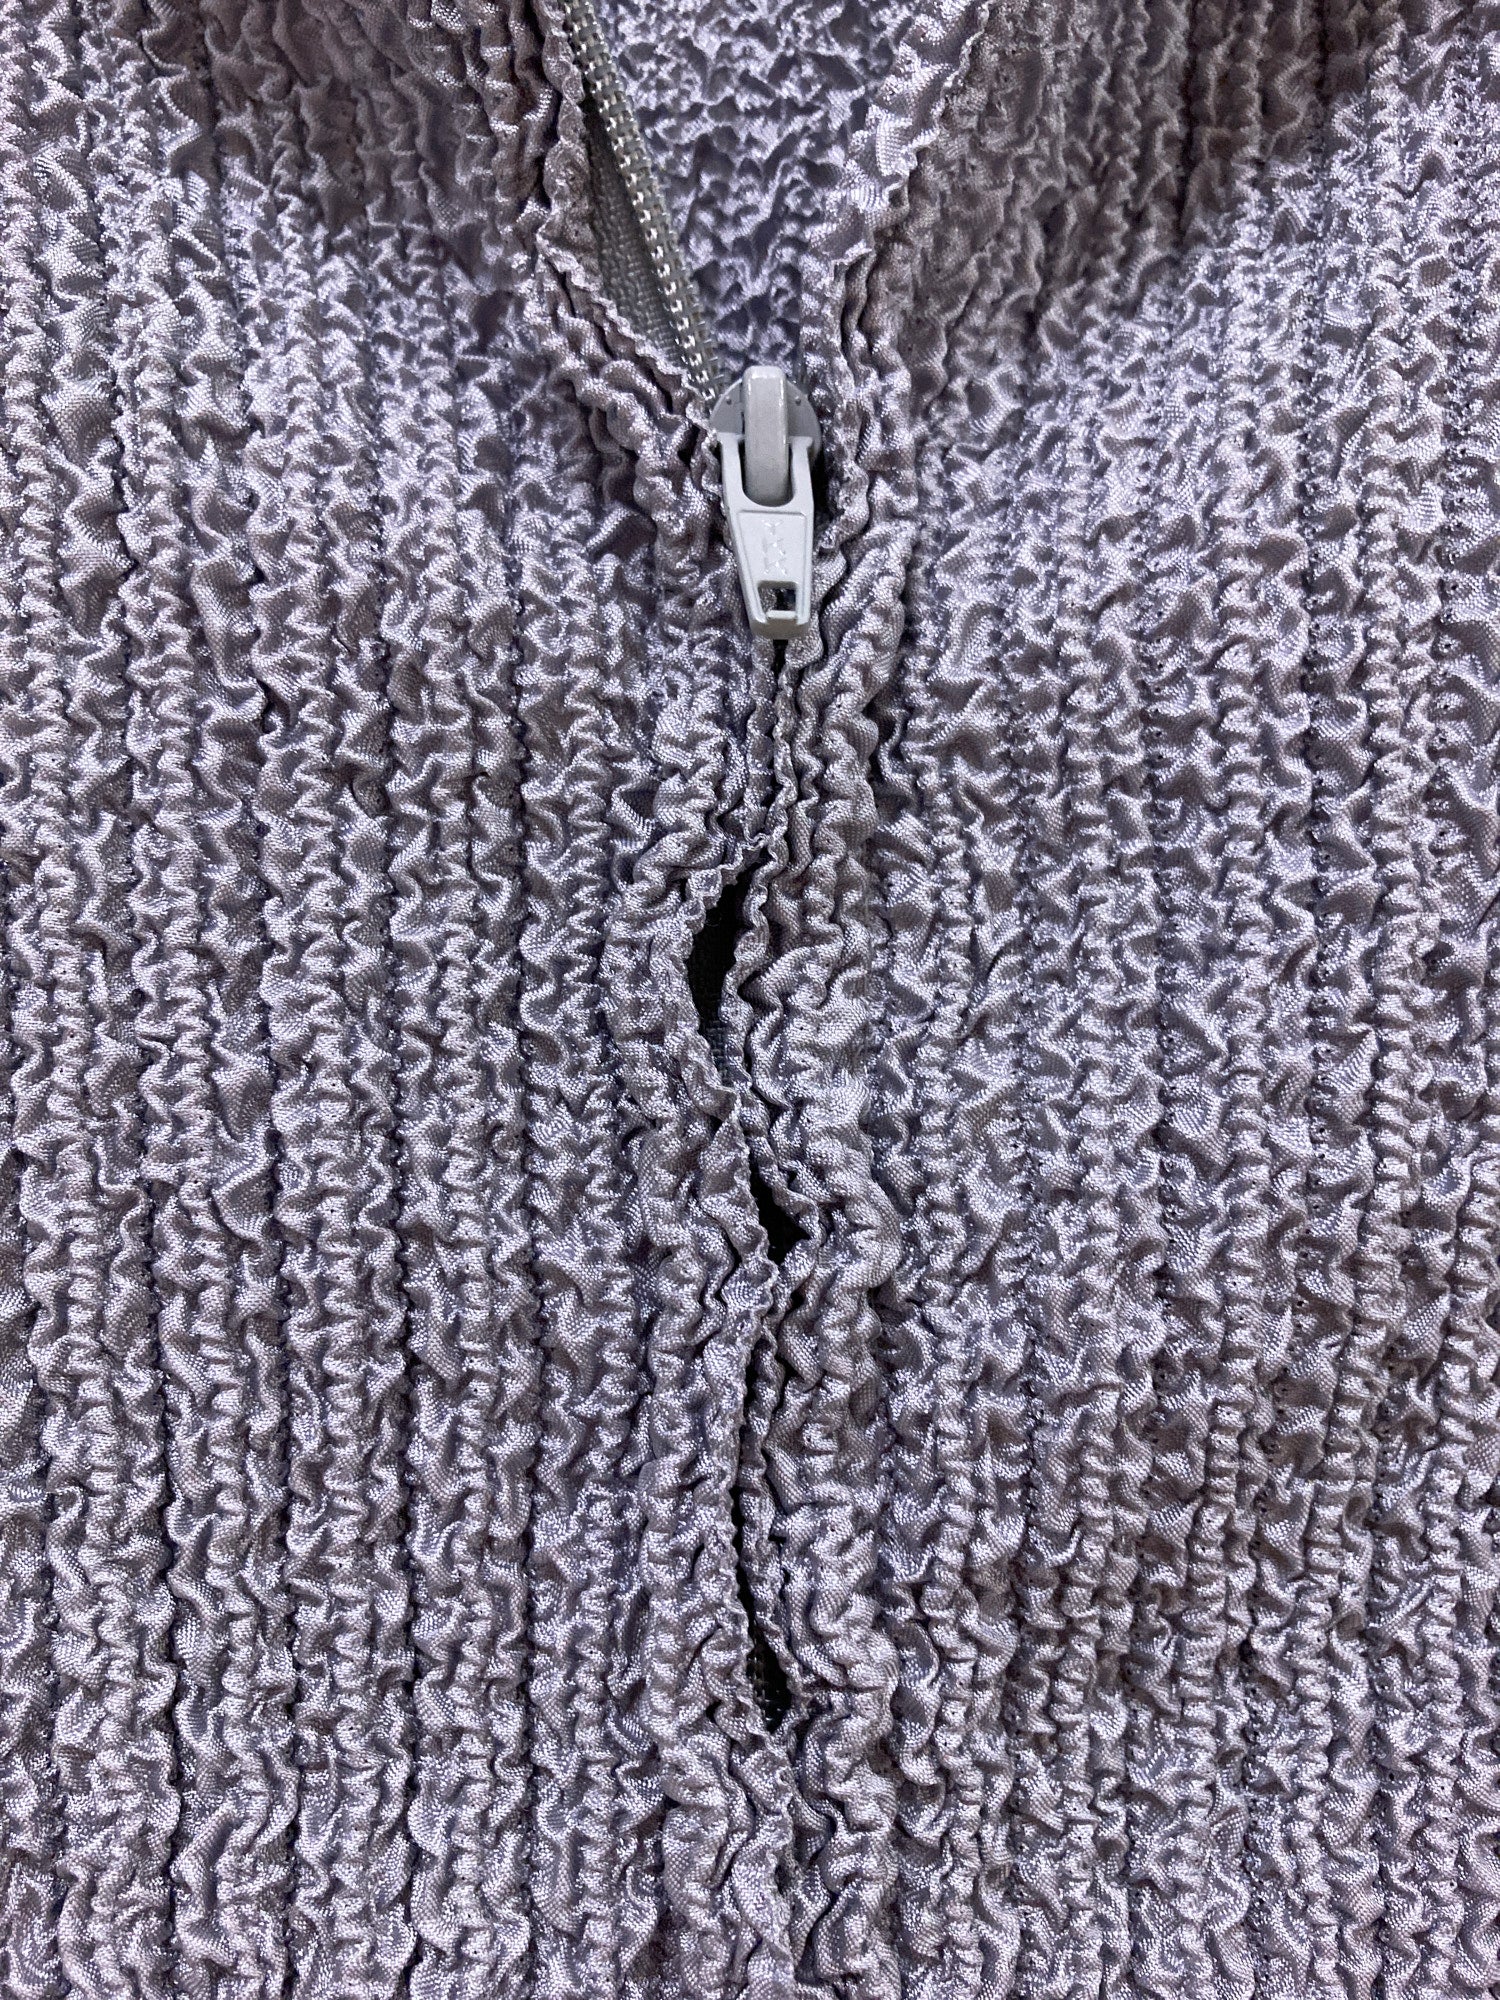 Yoshiki Hishinuma Peplum grey wrinkled polyester back zip cardigan - size 1 S